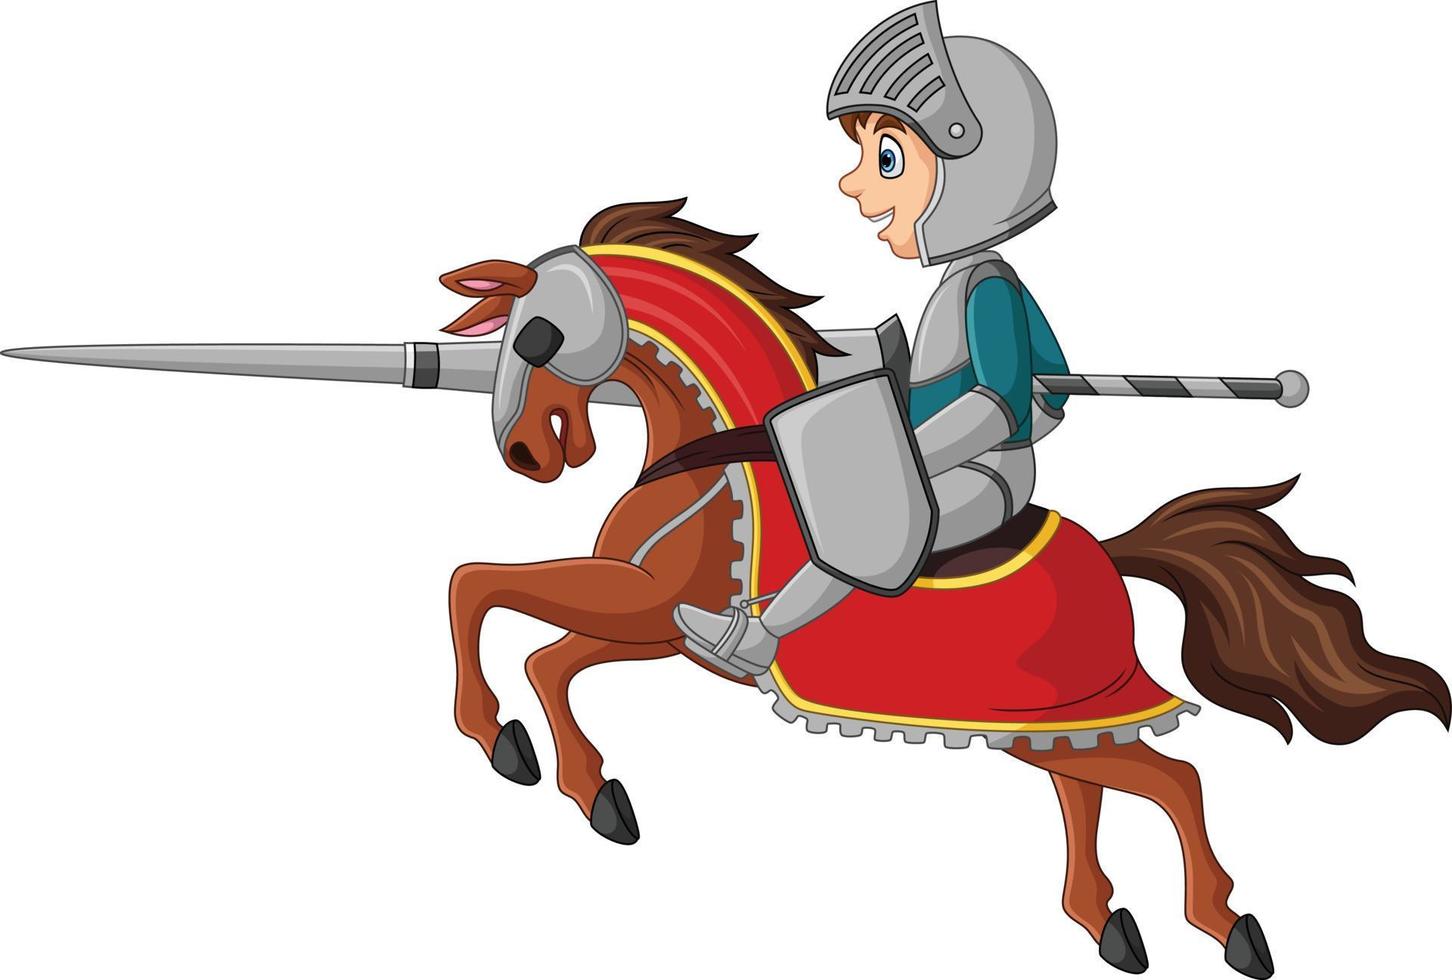 cavaleiro dos desenhos animados, montando um cavalo com lança vetor